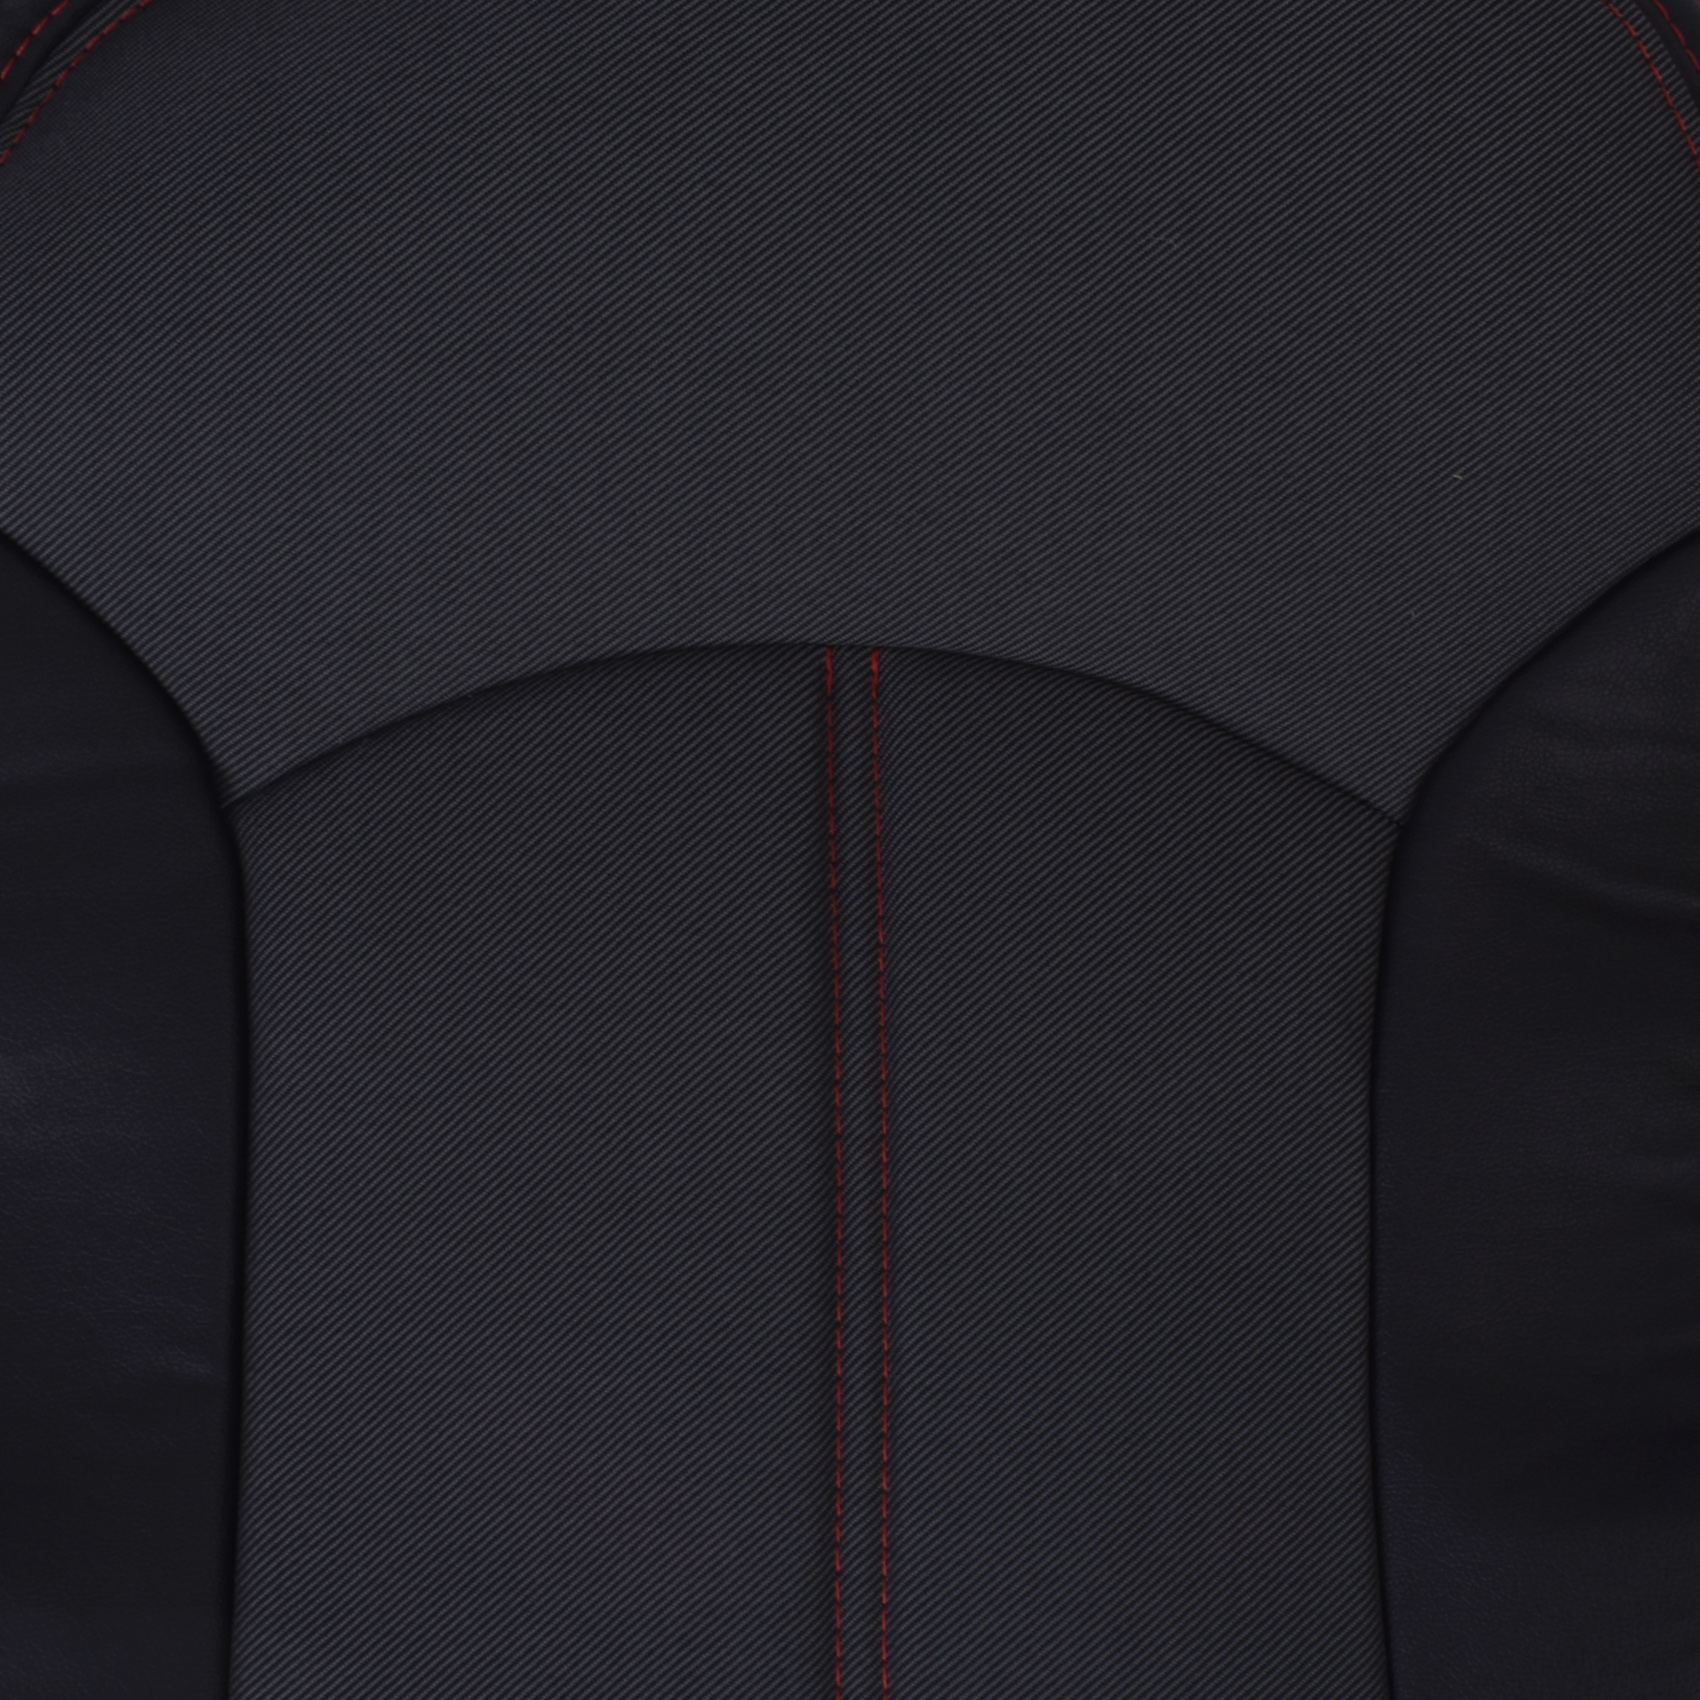 روکش صندلی خودرو مدل ۲۰۶۴ مناسب برای پژو ۲۰۶/ ۲۰۷